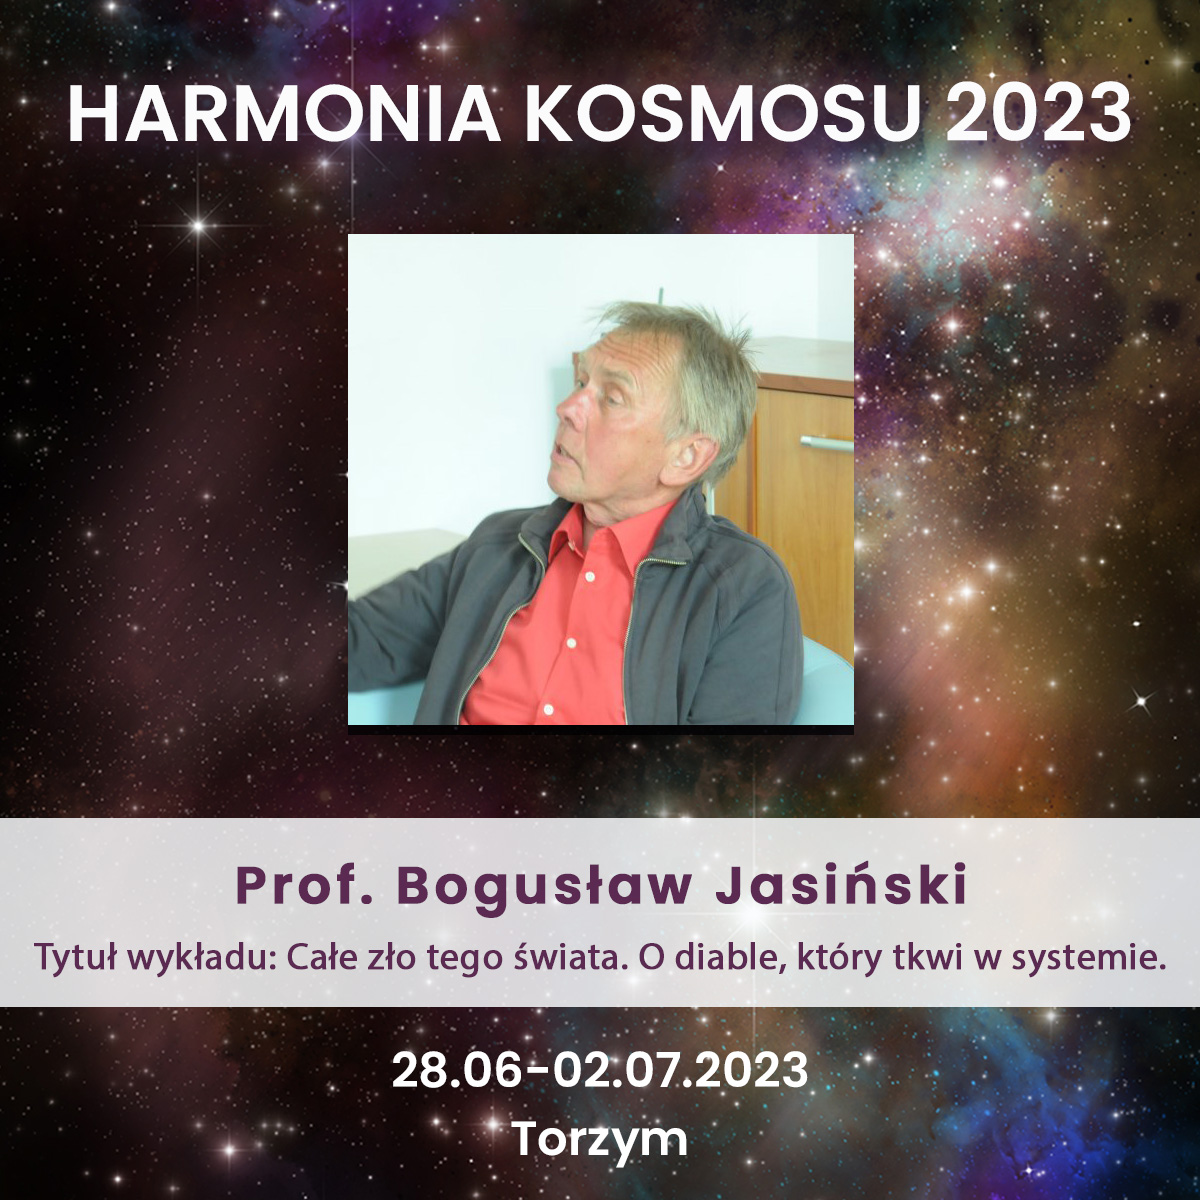 Prof. Bogusław Jasiński